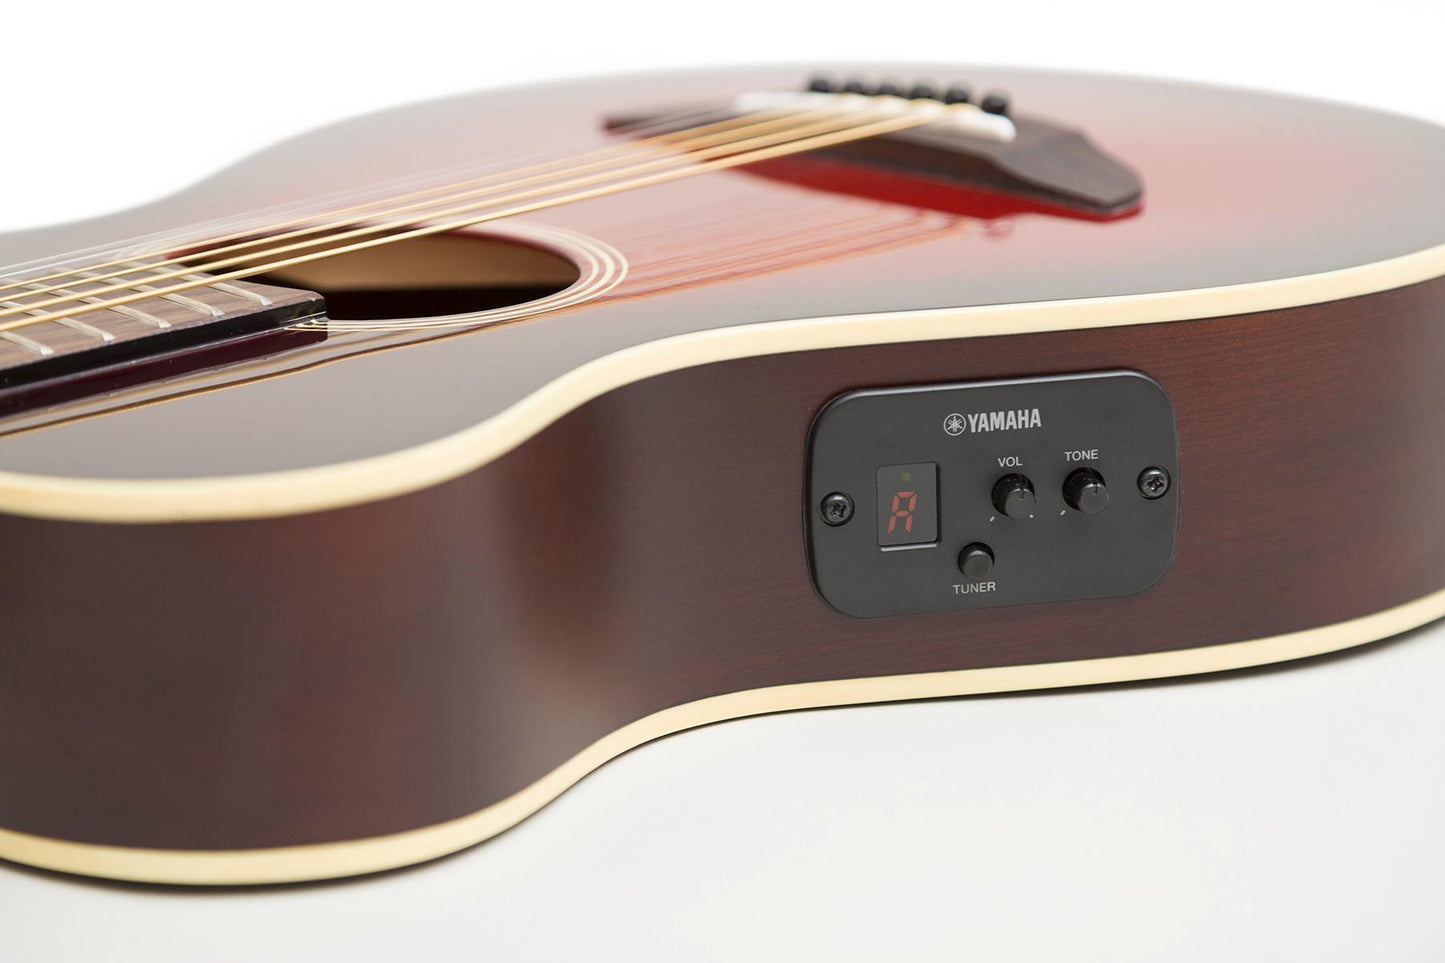 Yamaha Acoustic-Electric Guitar APXT2